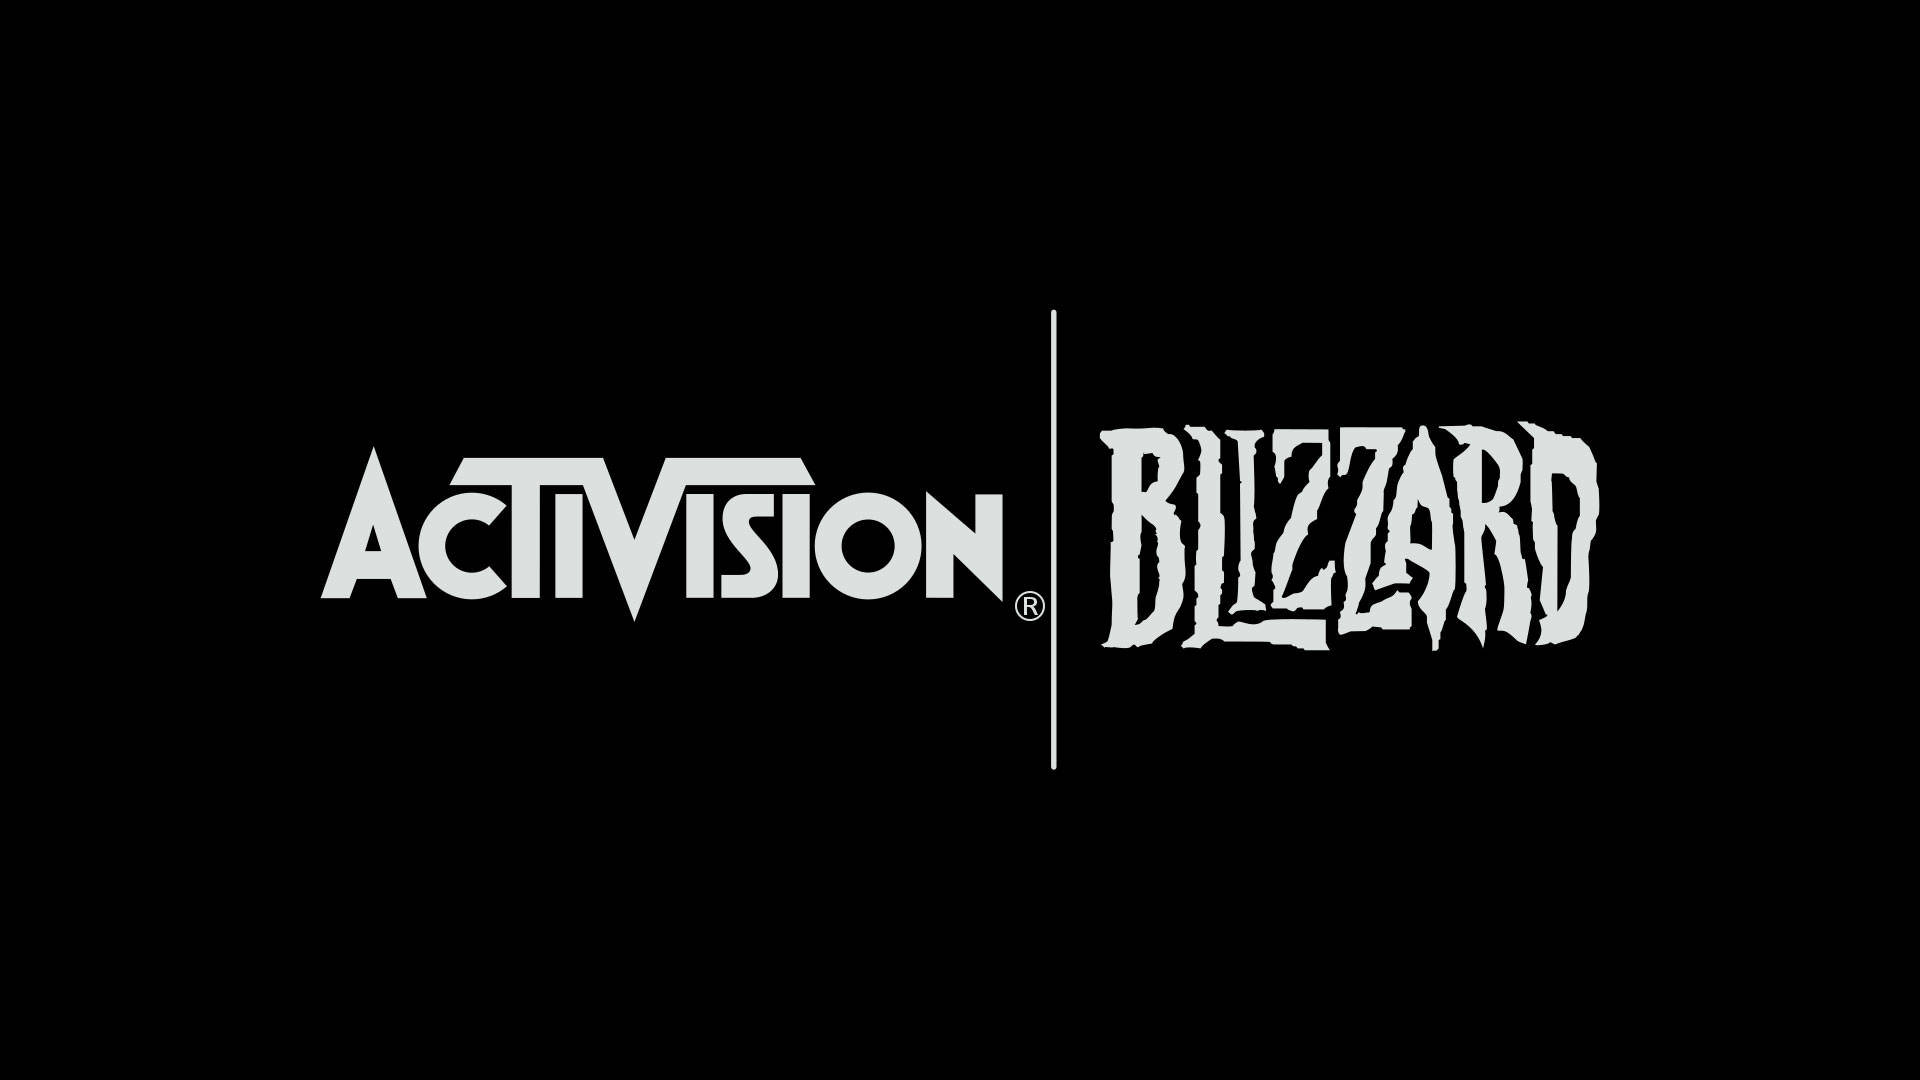 Microsoft kämpft gegen Blockade der Activision Blizzard-Übernahme Titel